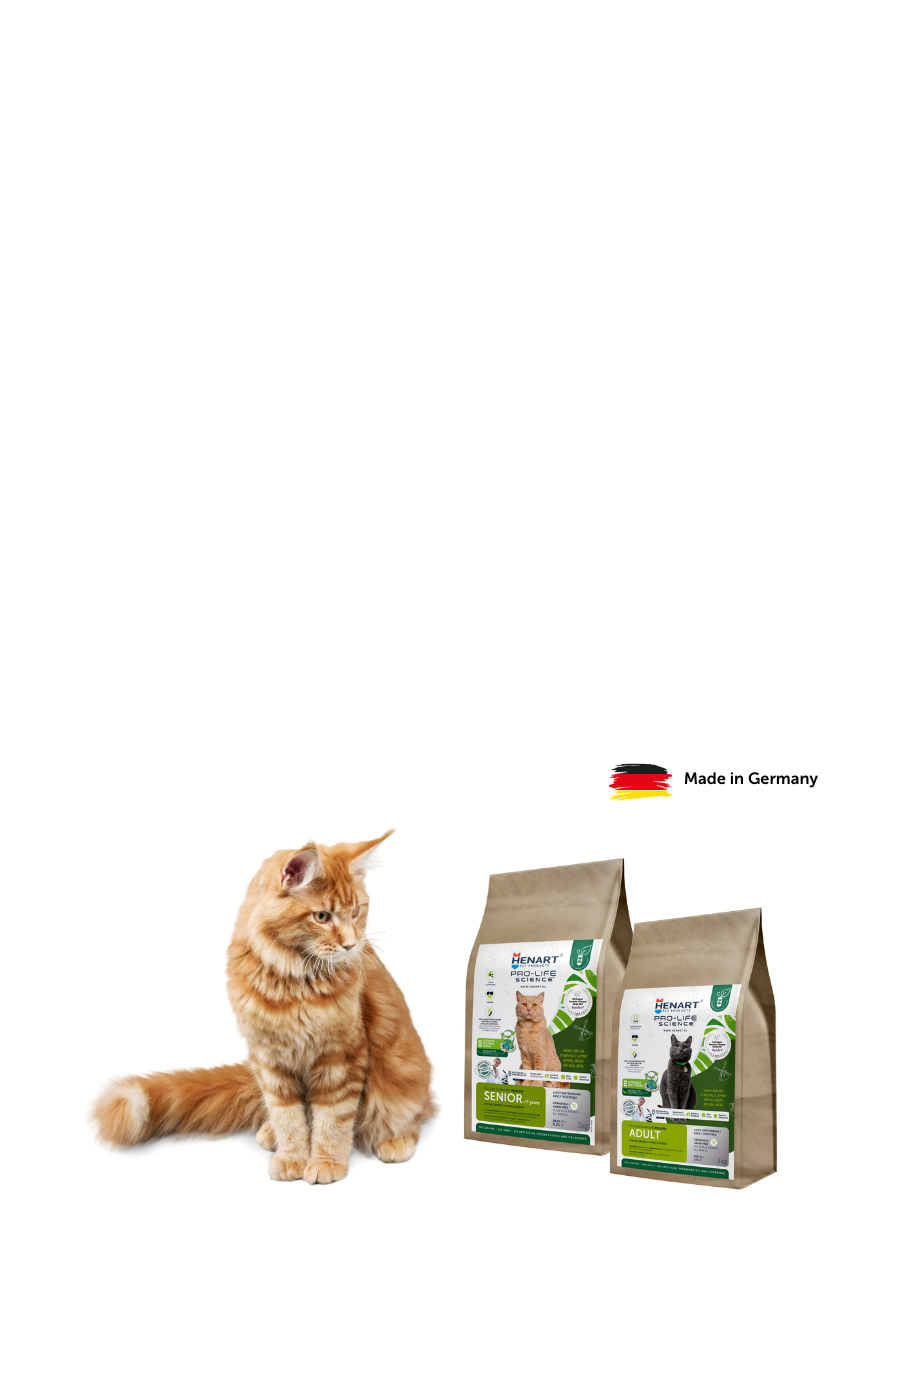 Eine Katze wirft einen Blick auf zwei Packungen des HenArt Katzenfutters.